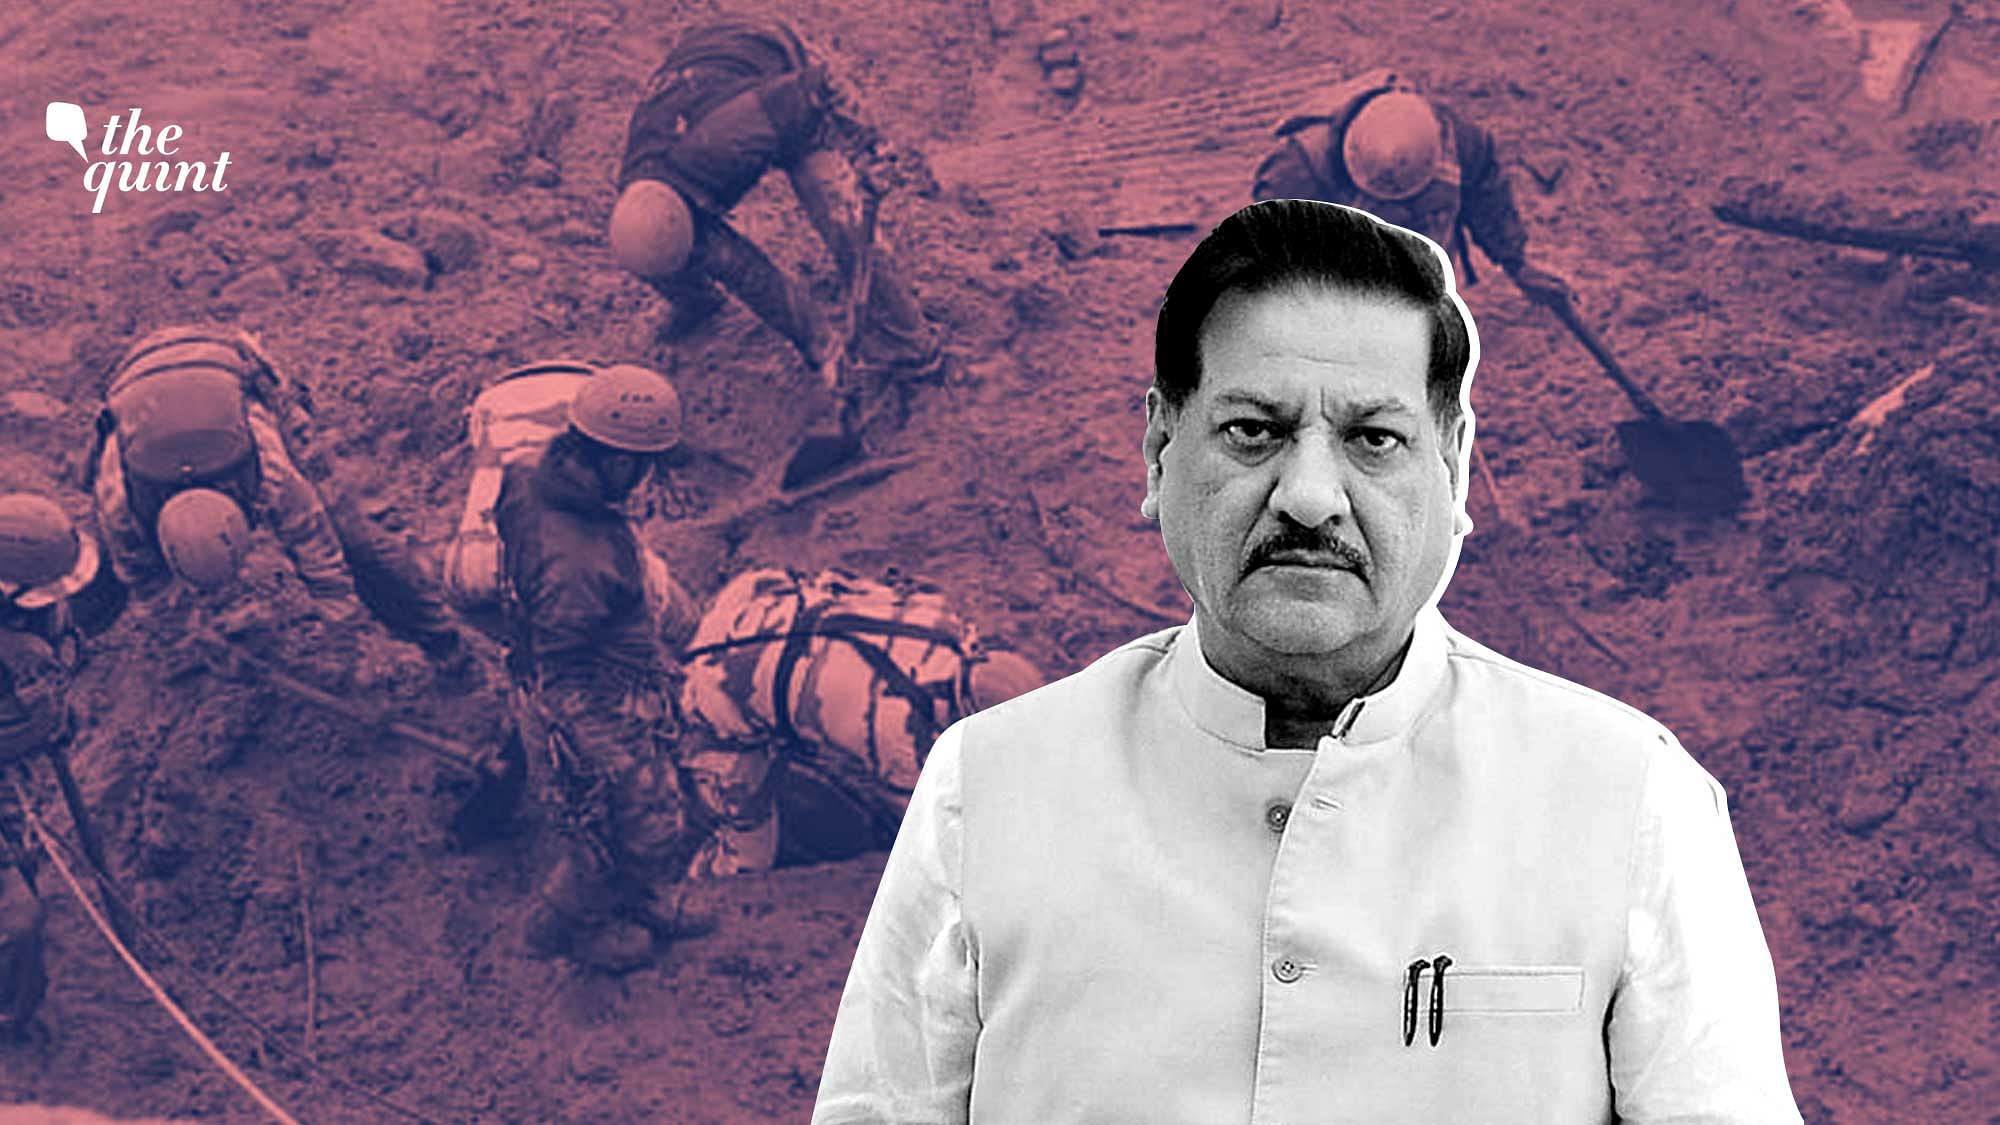 Image from 2021 Uttarakhand disaster and that of former Maharashtra CM Prithviraj Chavan used for representational purposes.